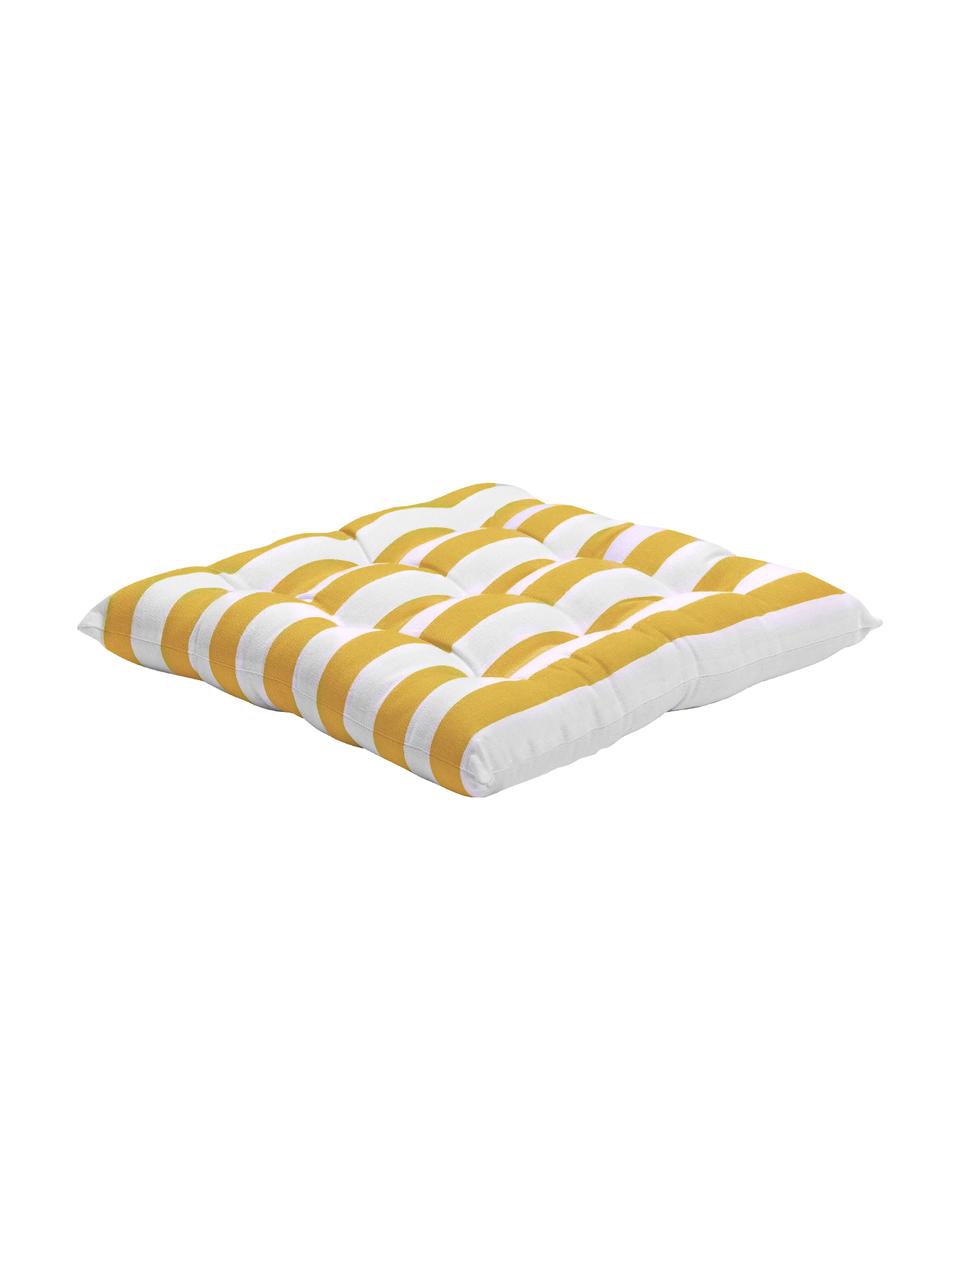 Coussin de chaise 40x40 rayures jaunes Timon, Jaune, blanc, larg. 40 x long. 40 cm